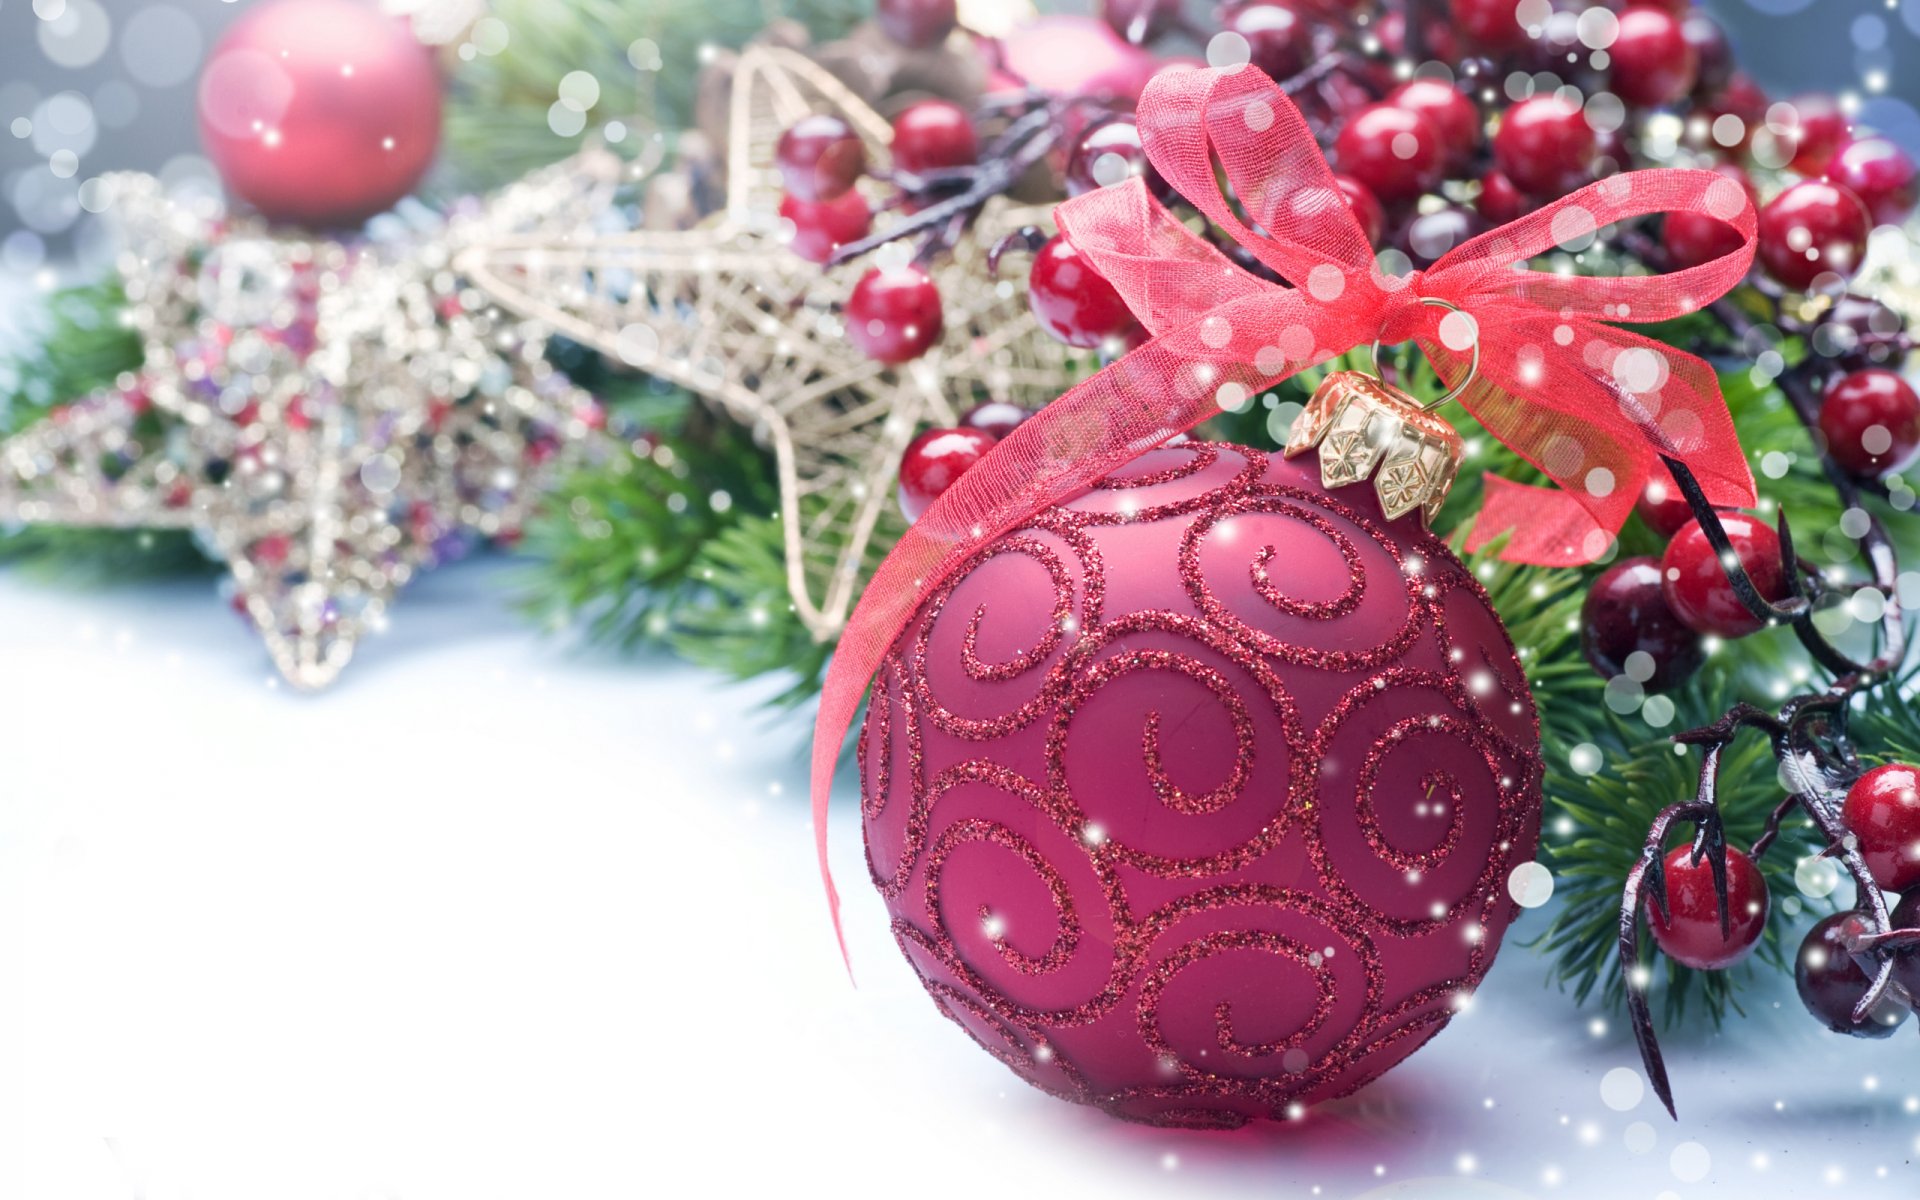 neues jahr frohes neues jahr urlaub weihnachtstapeten weihnachtsfarben weihnachtsdekoration urlaubstapeten dekorationen spielzeug ballon band